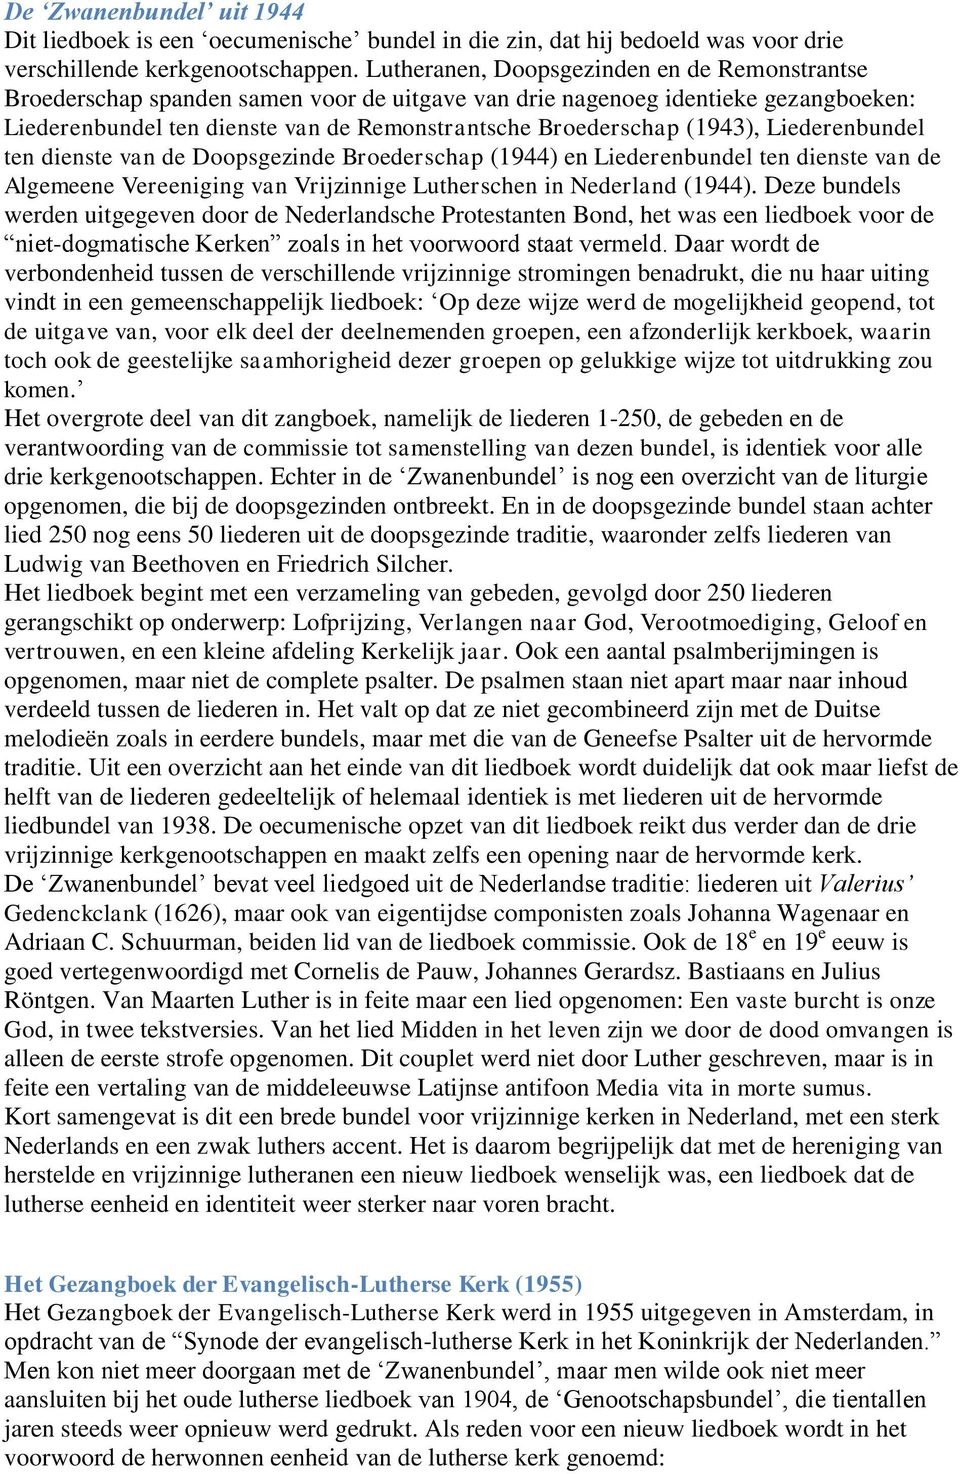 (1943), Liederenbundel ten dienste van de Doopsgezinde Broederschap (1944) en Liederenbundel ten dienste van de Algemeene Vereeniging van Vrijzinnige Lutherschen in Nederland (1944).